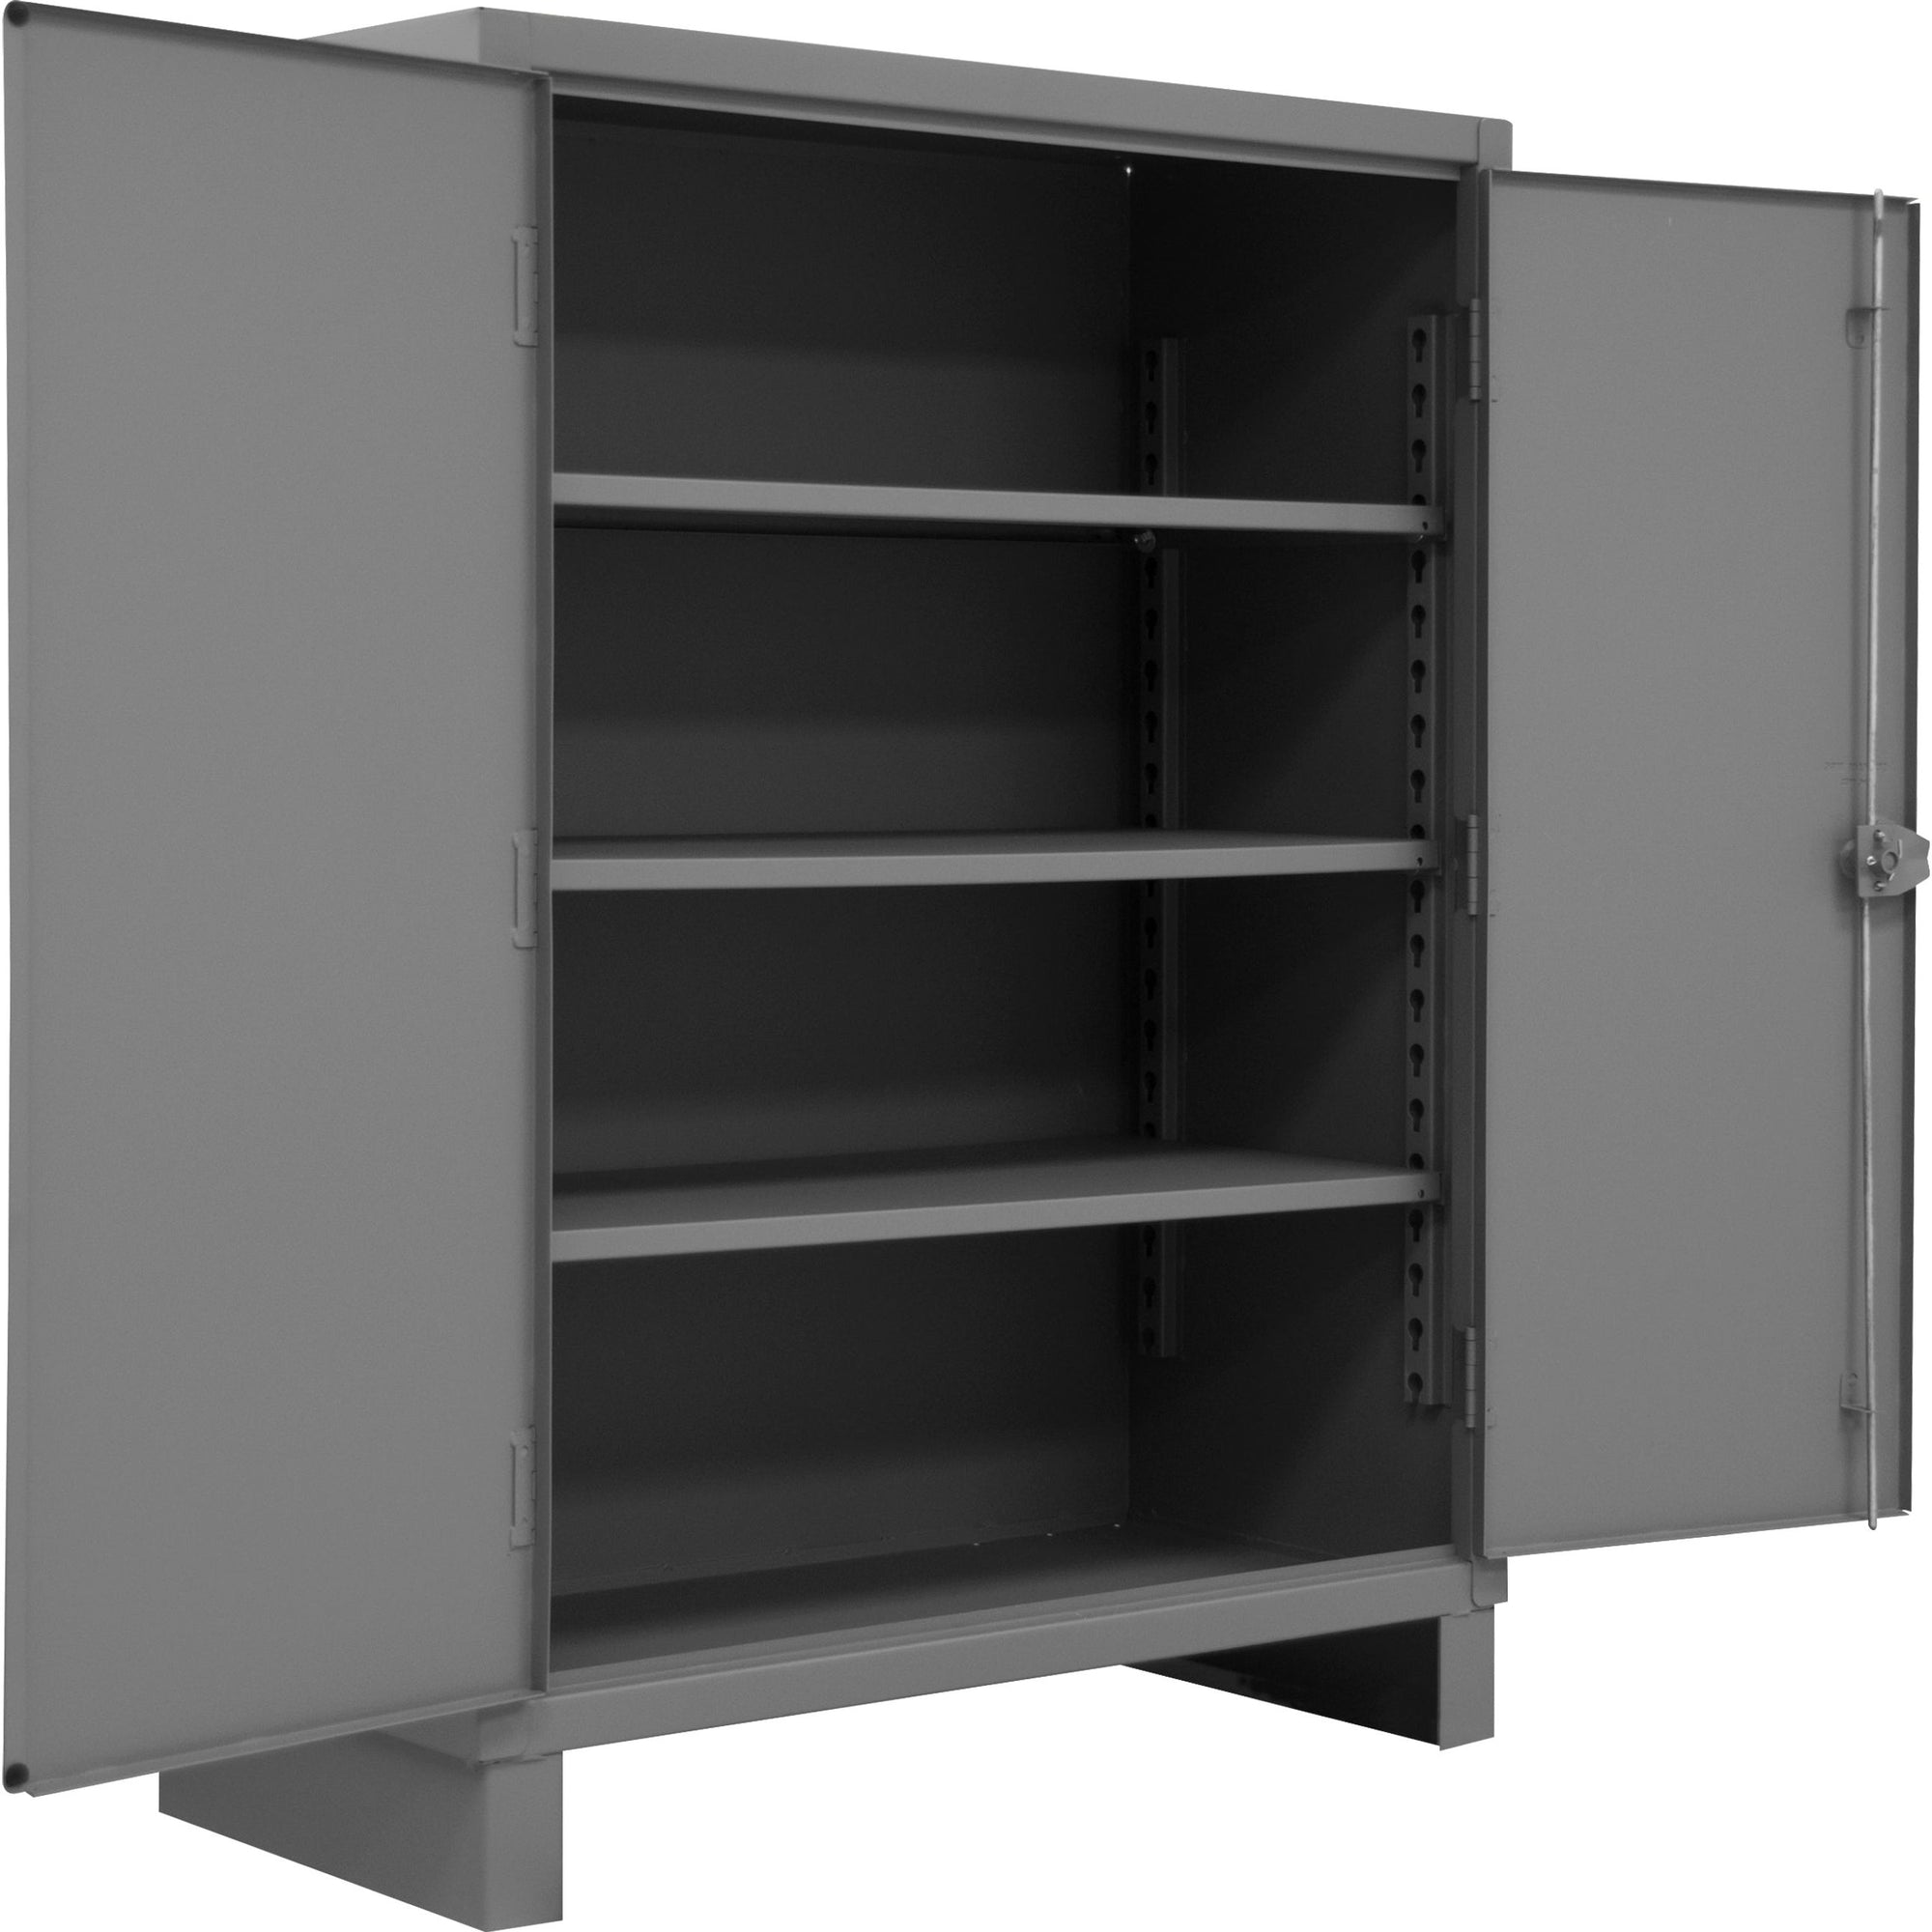 Dim Gray Durham Extra Heavy Duty 4 Shelves Storage Cabinet 48 X 24 X 78